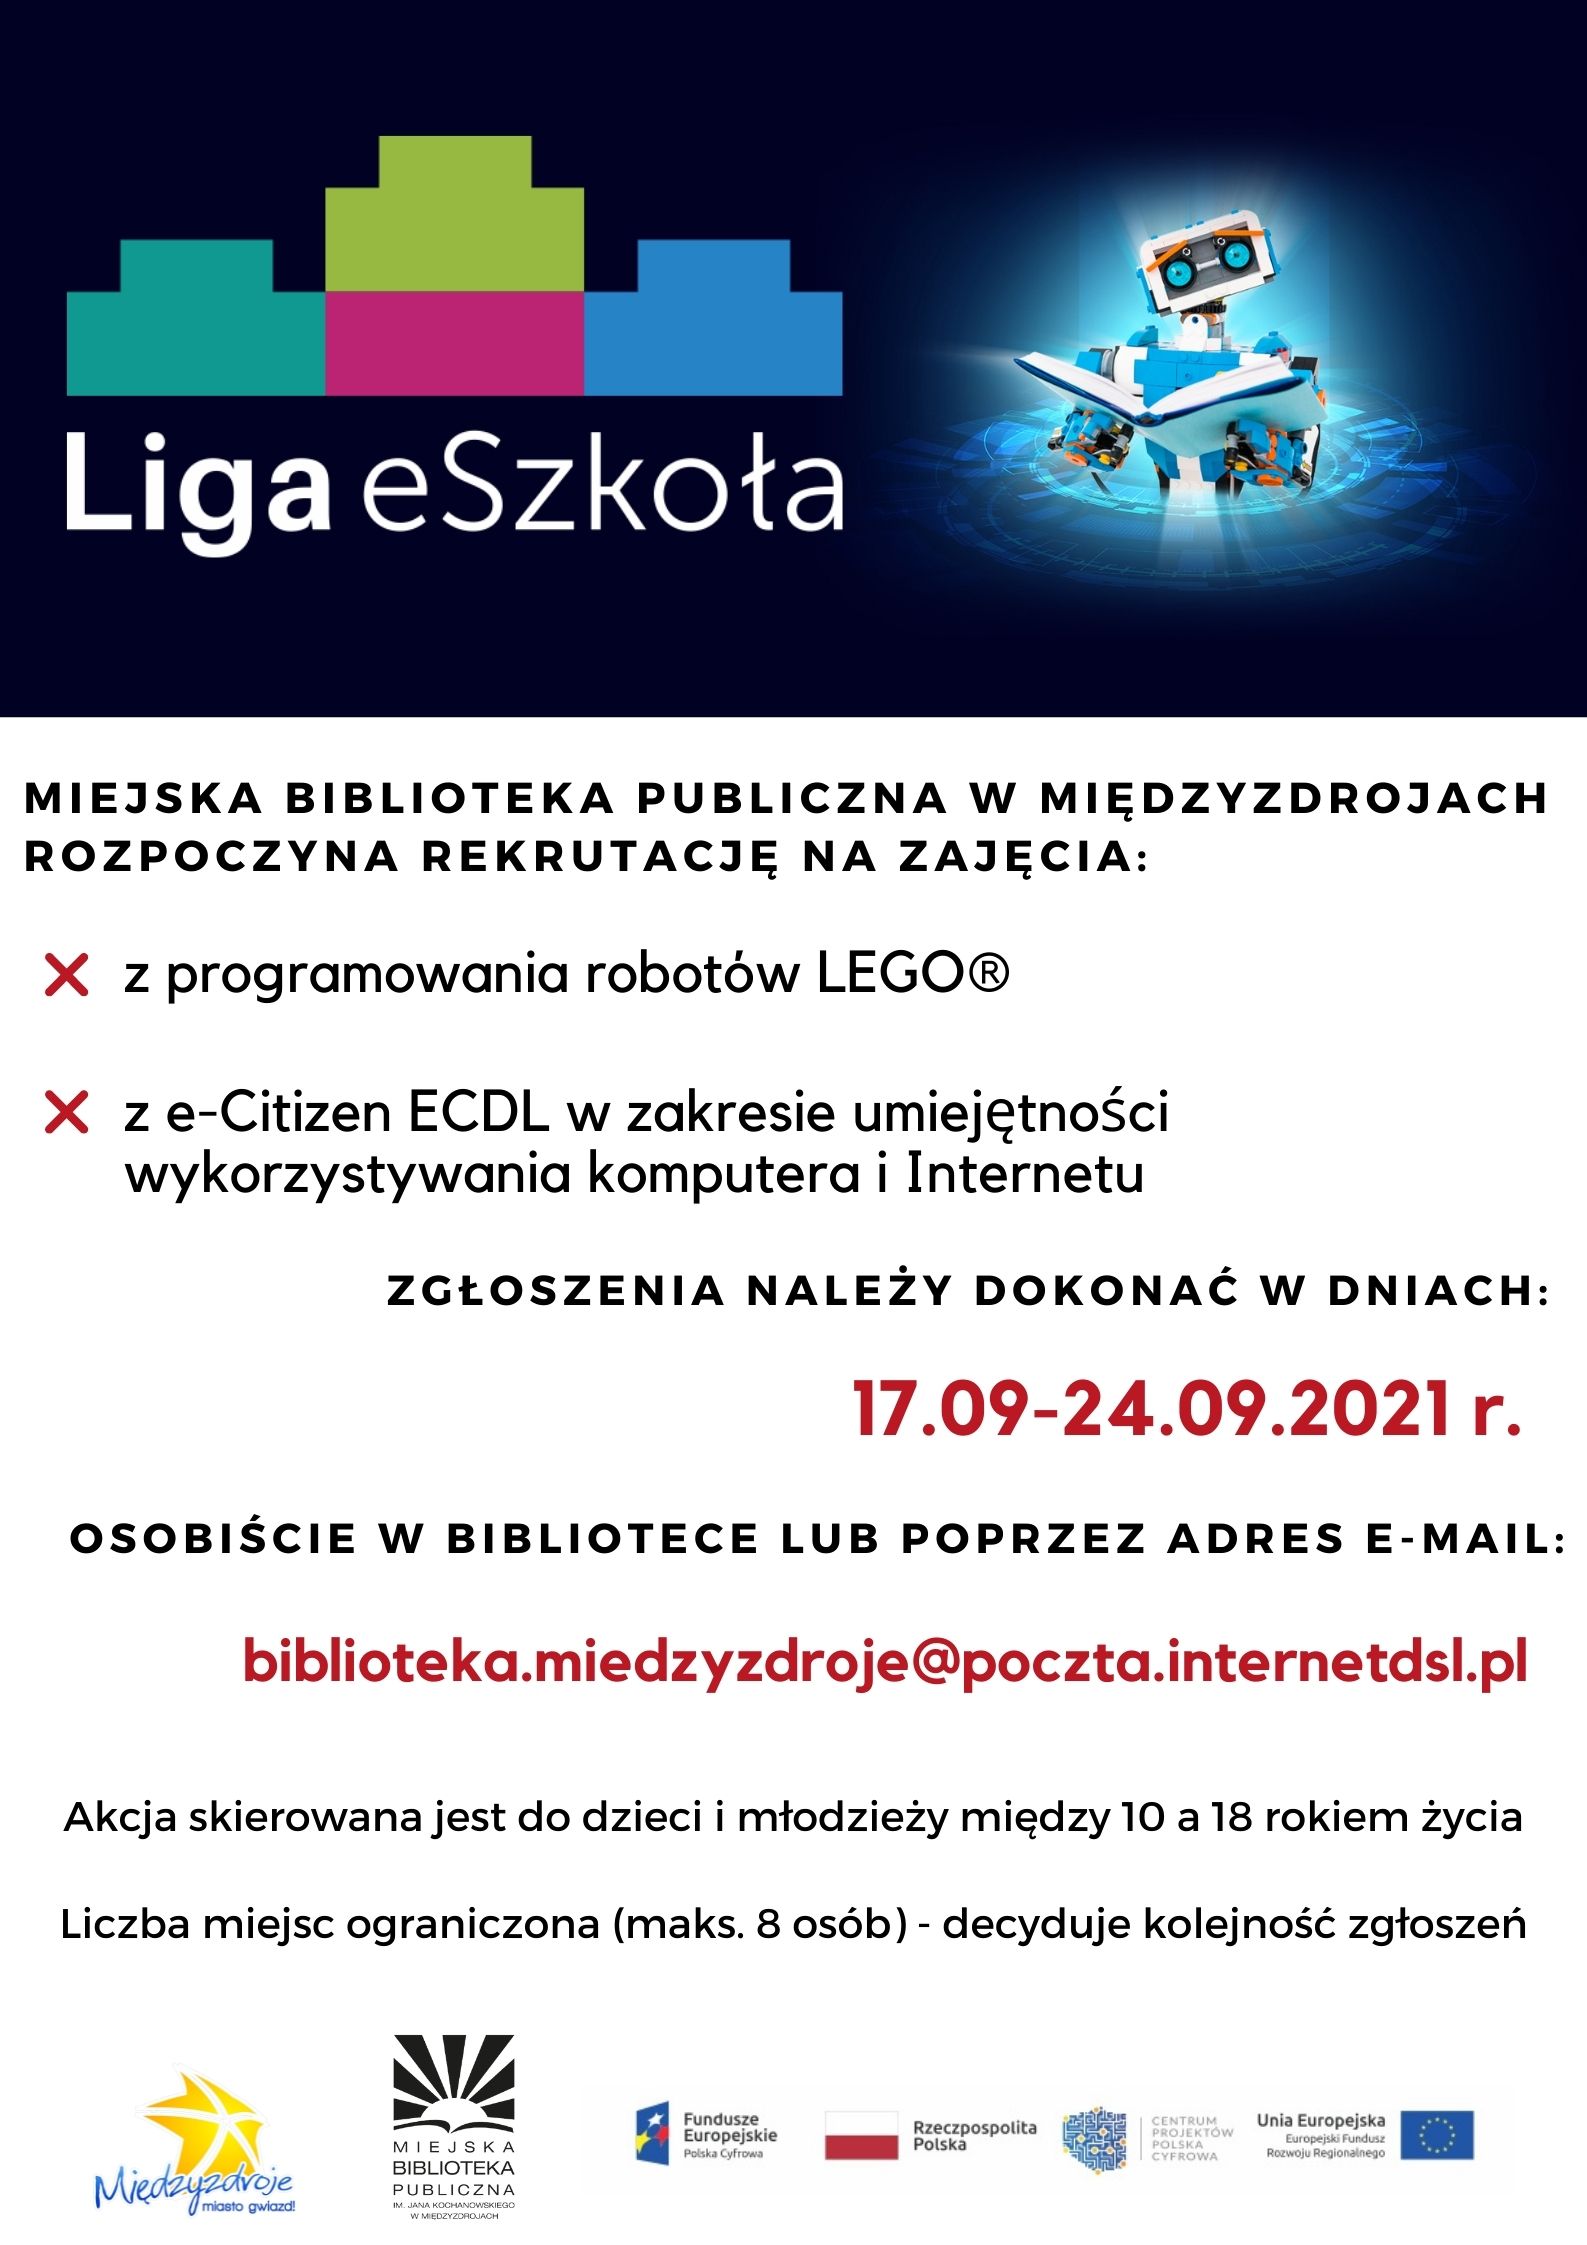 Rekrutacja na zajęcia z ECDL i Lego Spike w ramach programu Liga eSzkoła 17-24 września 2021 r.